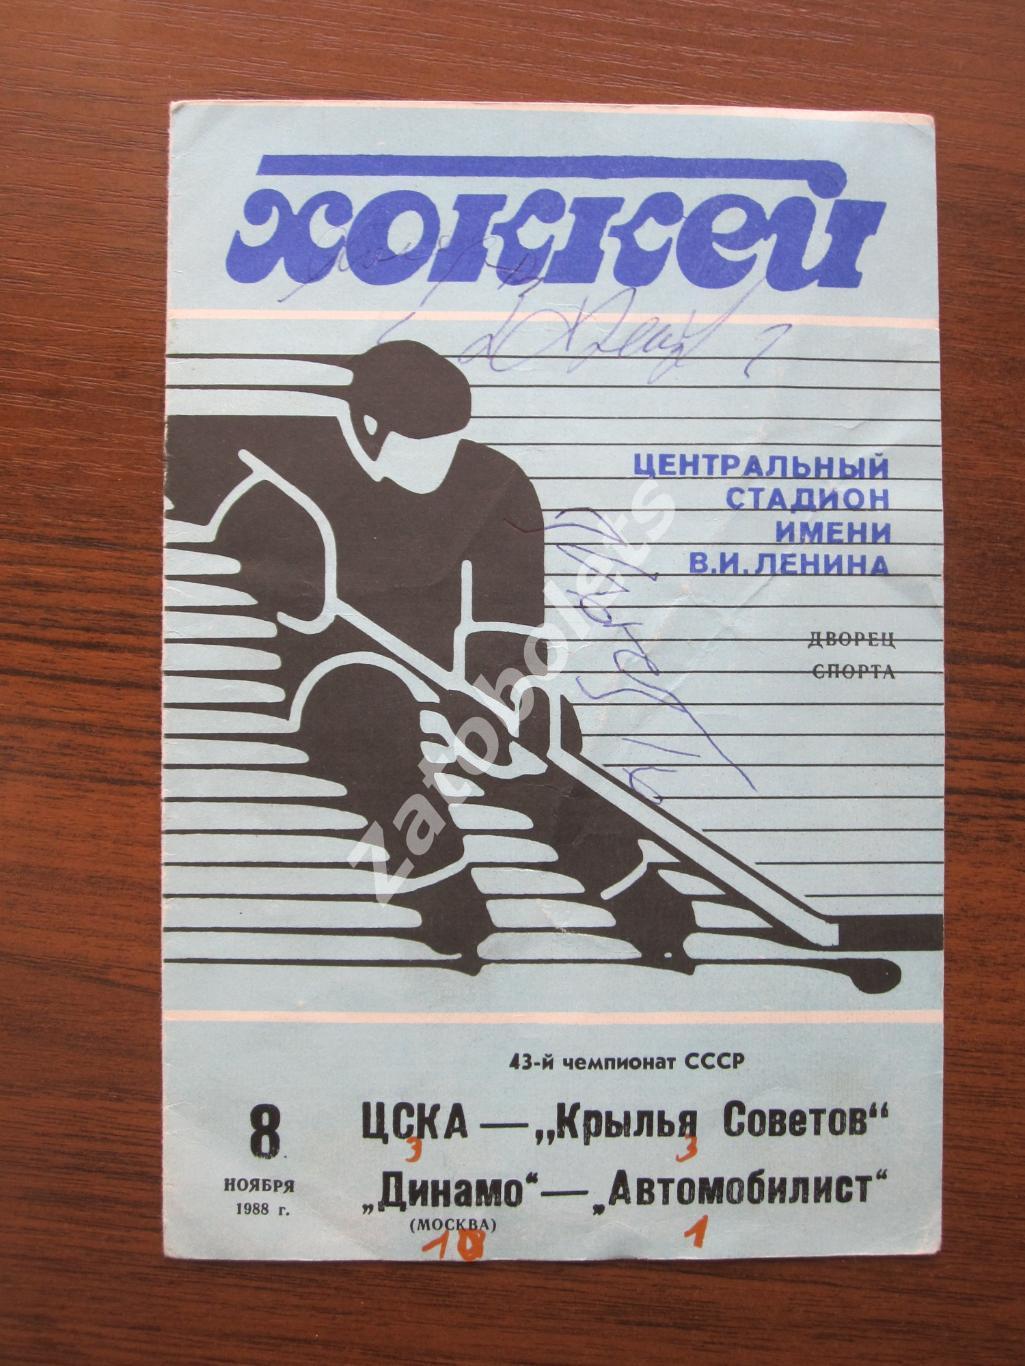 ЦСКА-Крылья Советов 1988 автографы Фетисов Владимир Константинов